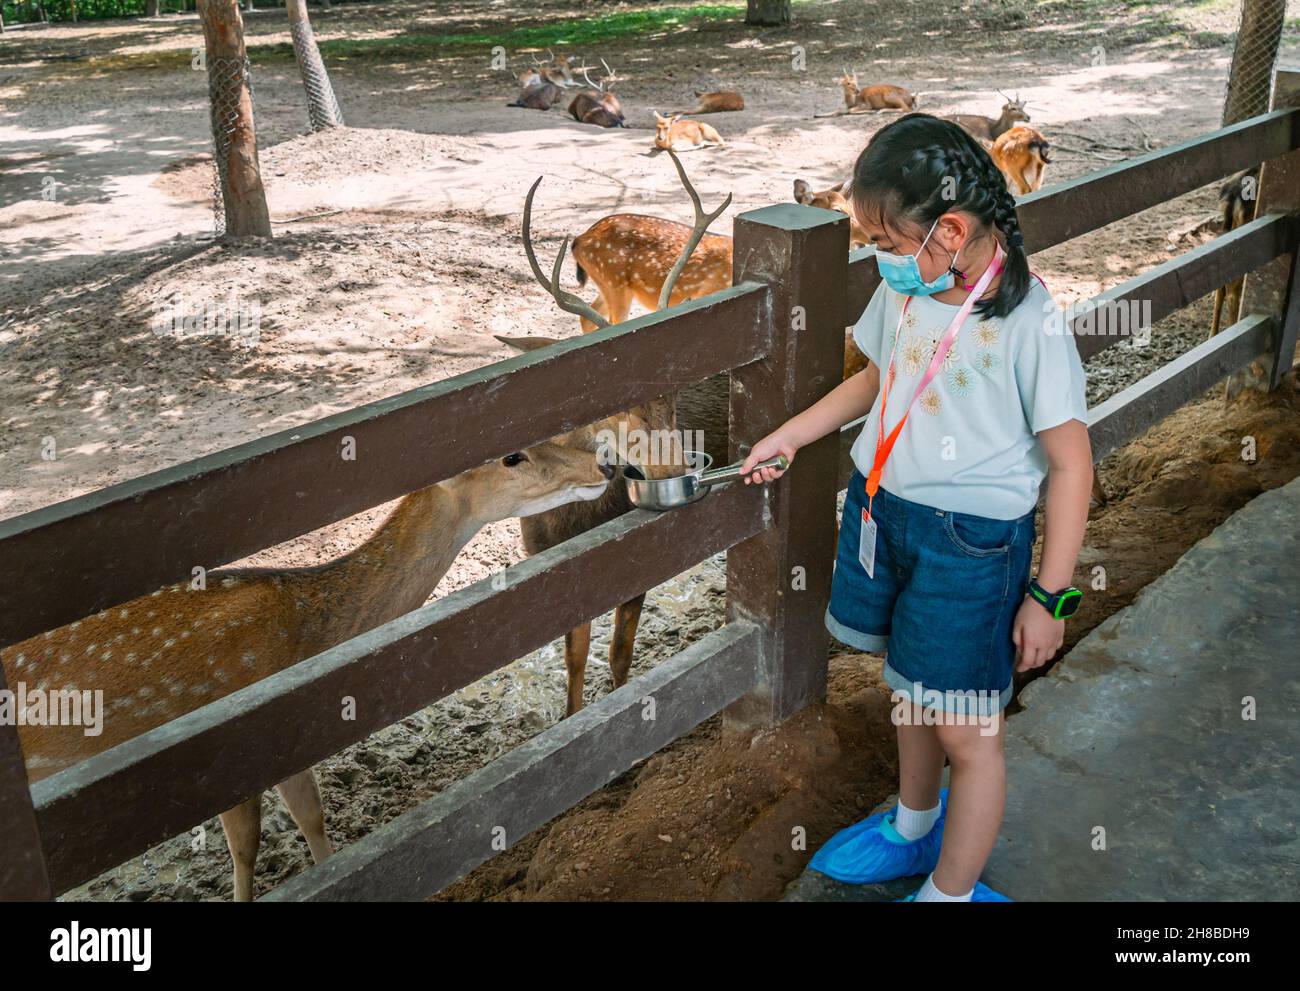 Petit enfant asiatique fille nourrissant un groupe de cerfs dans un zoo, enfant fille portant un masque facial ou un masque médical, tenant la poignée en aluminium pot avec de la nourriture pour les enfants Banque D'Images